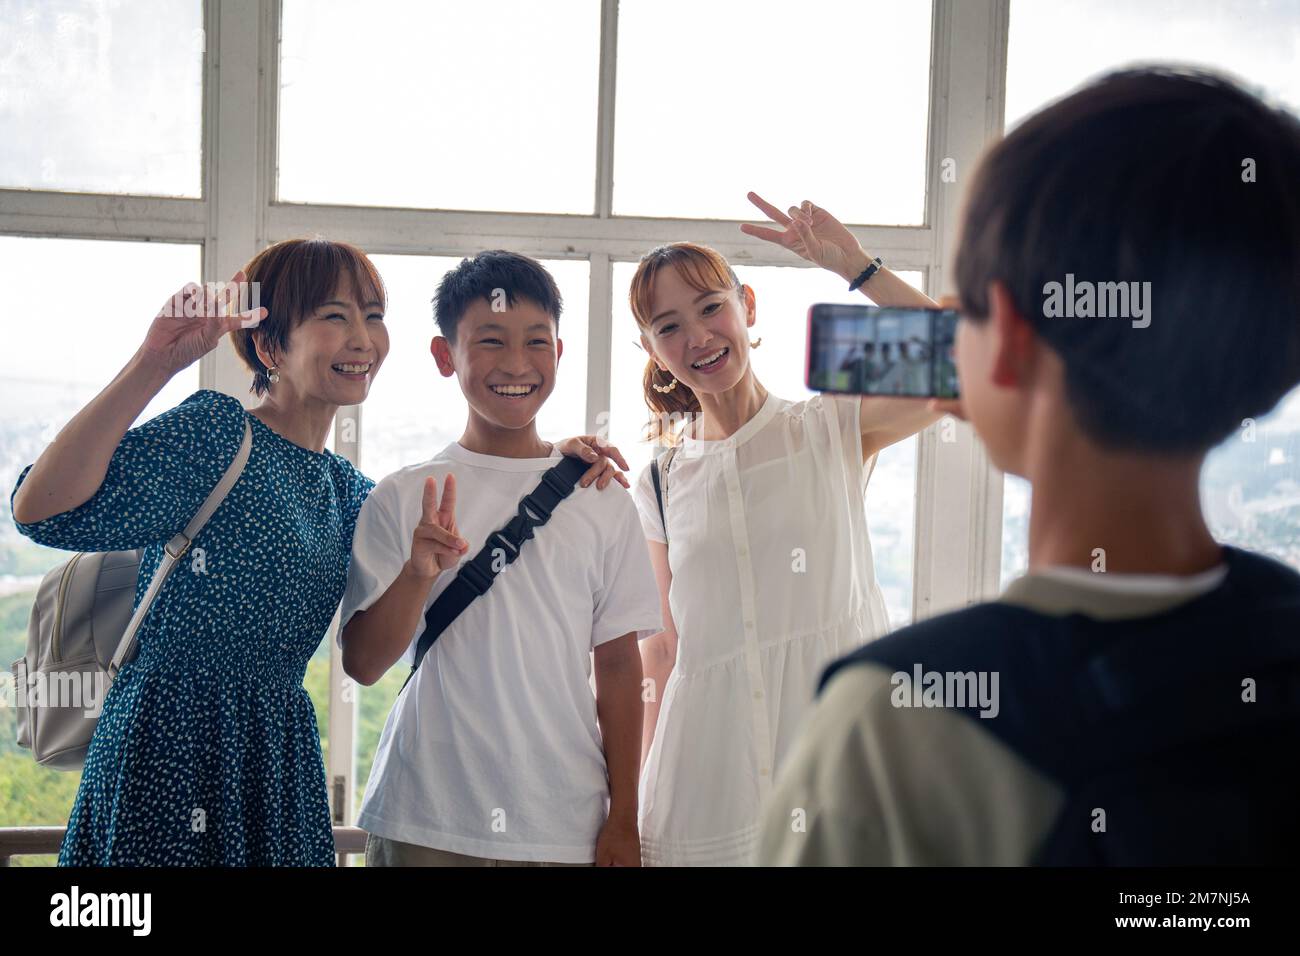 Un garçon utilisant son téléphone portable pour prendre une photo de trois Japonais, un garçon de 13 ans, sa mère et un ami. Banque D'Images